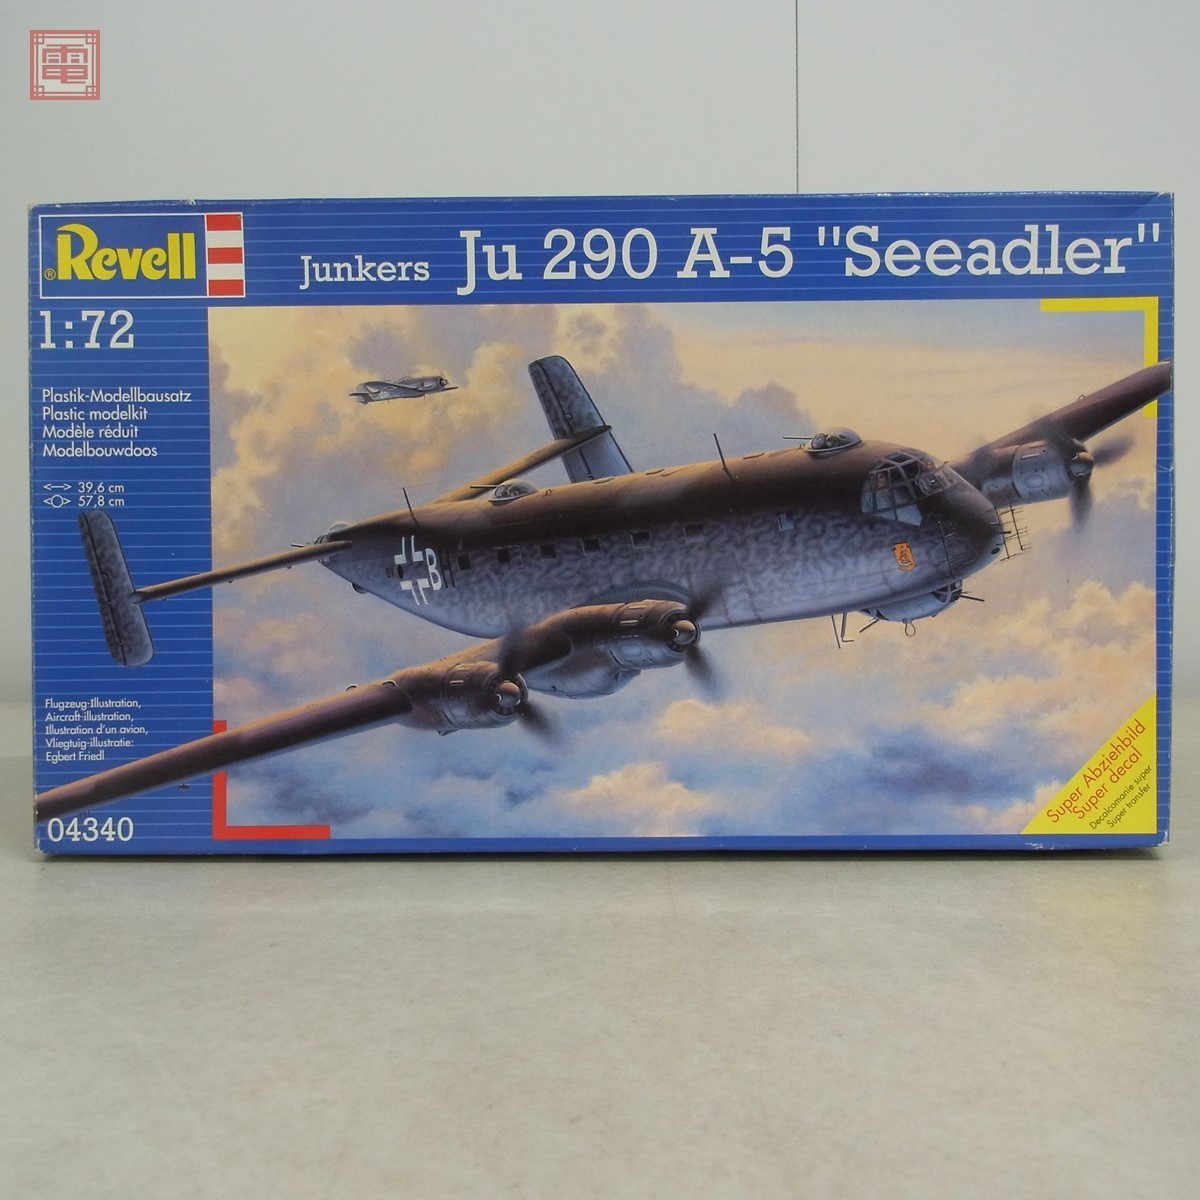 未組立 1/72 レベル ユンカース Ju 290 A-5 Seeadler Revell Junkers 【20